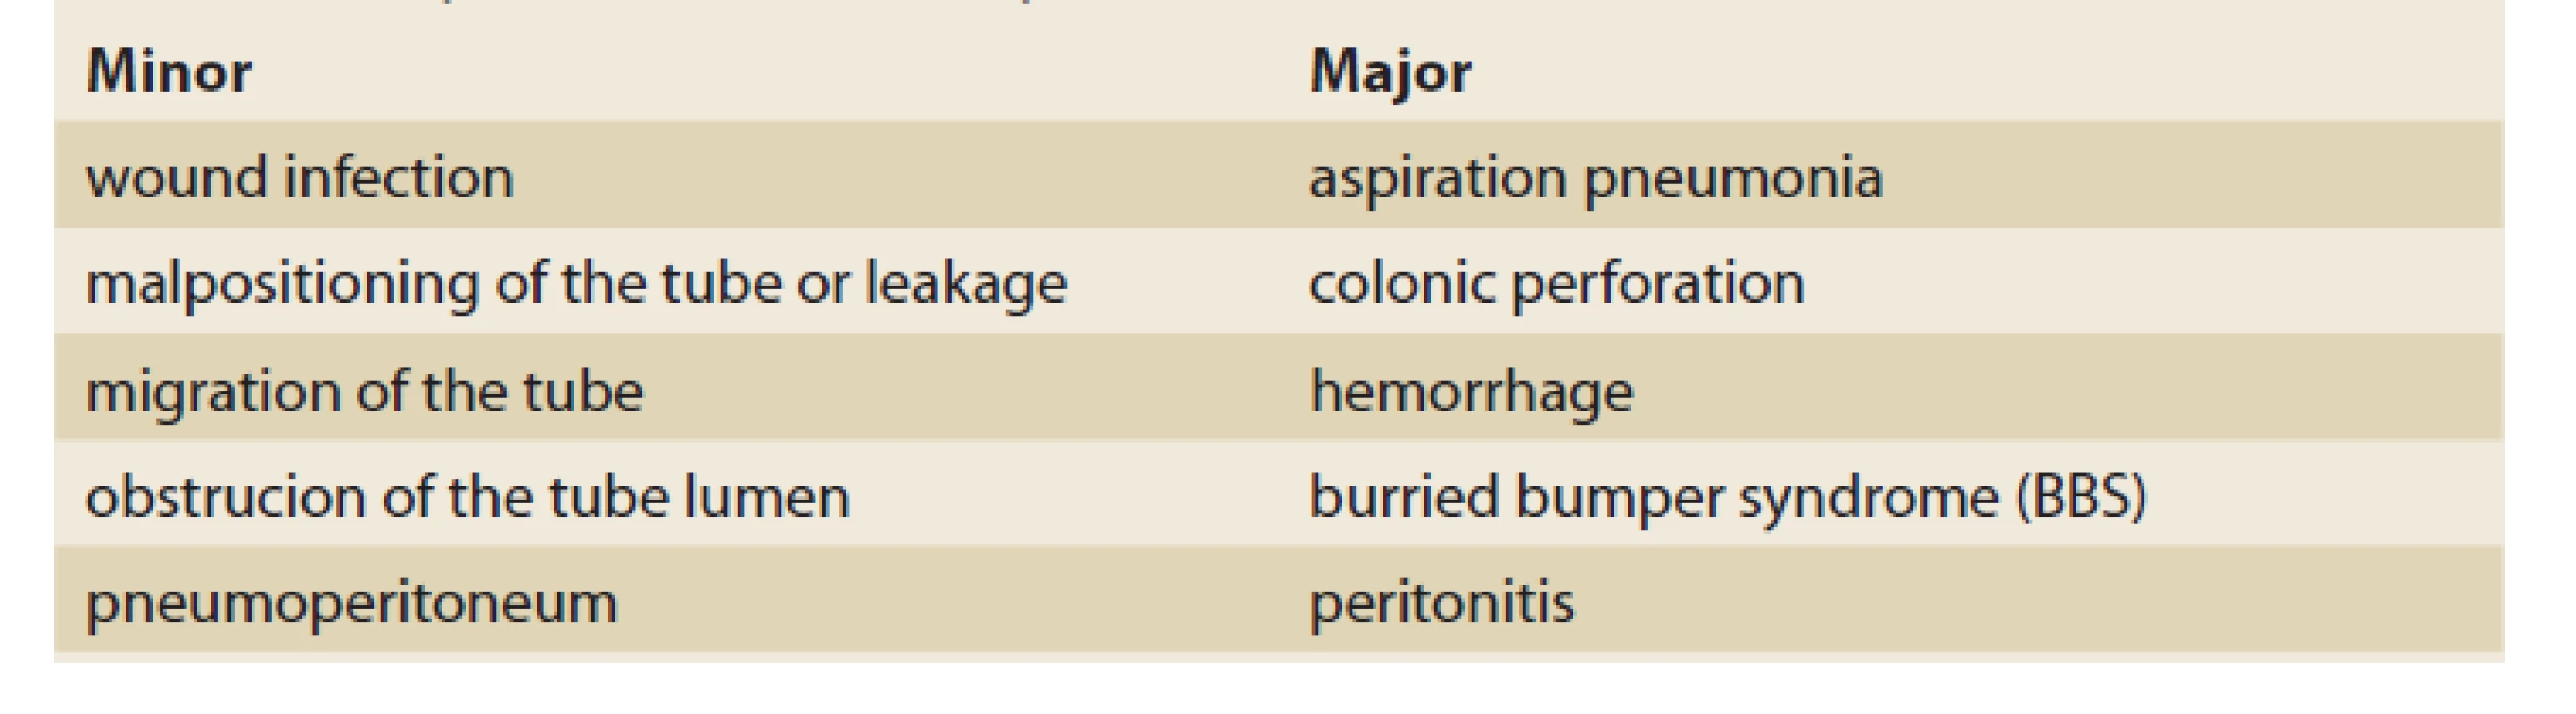 Complications of PEG/PEG-J according to severity [8].<br>
Tab. 1. Komplikácie PEG/PEG-J podľa závažnosti [8].